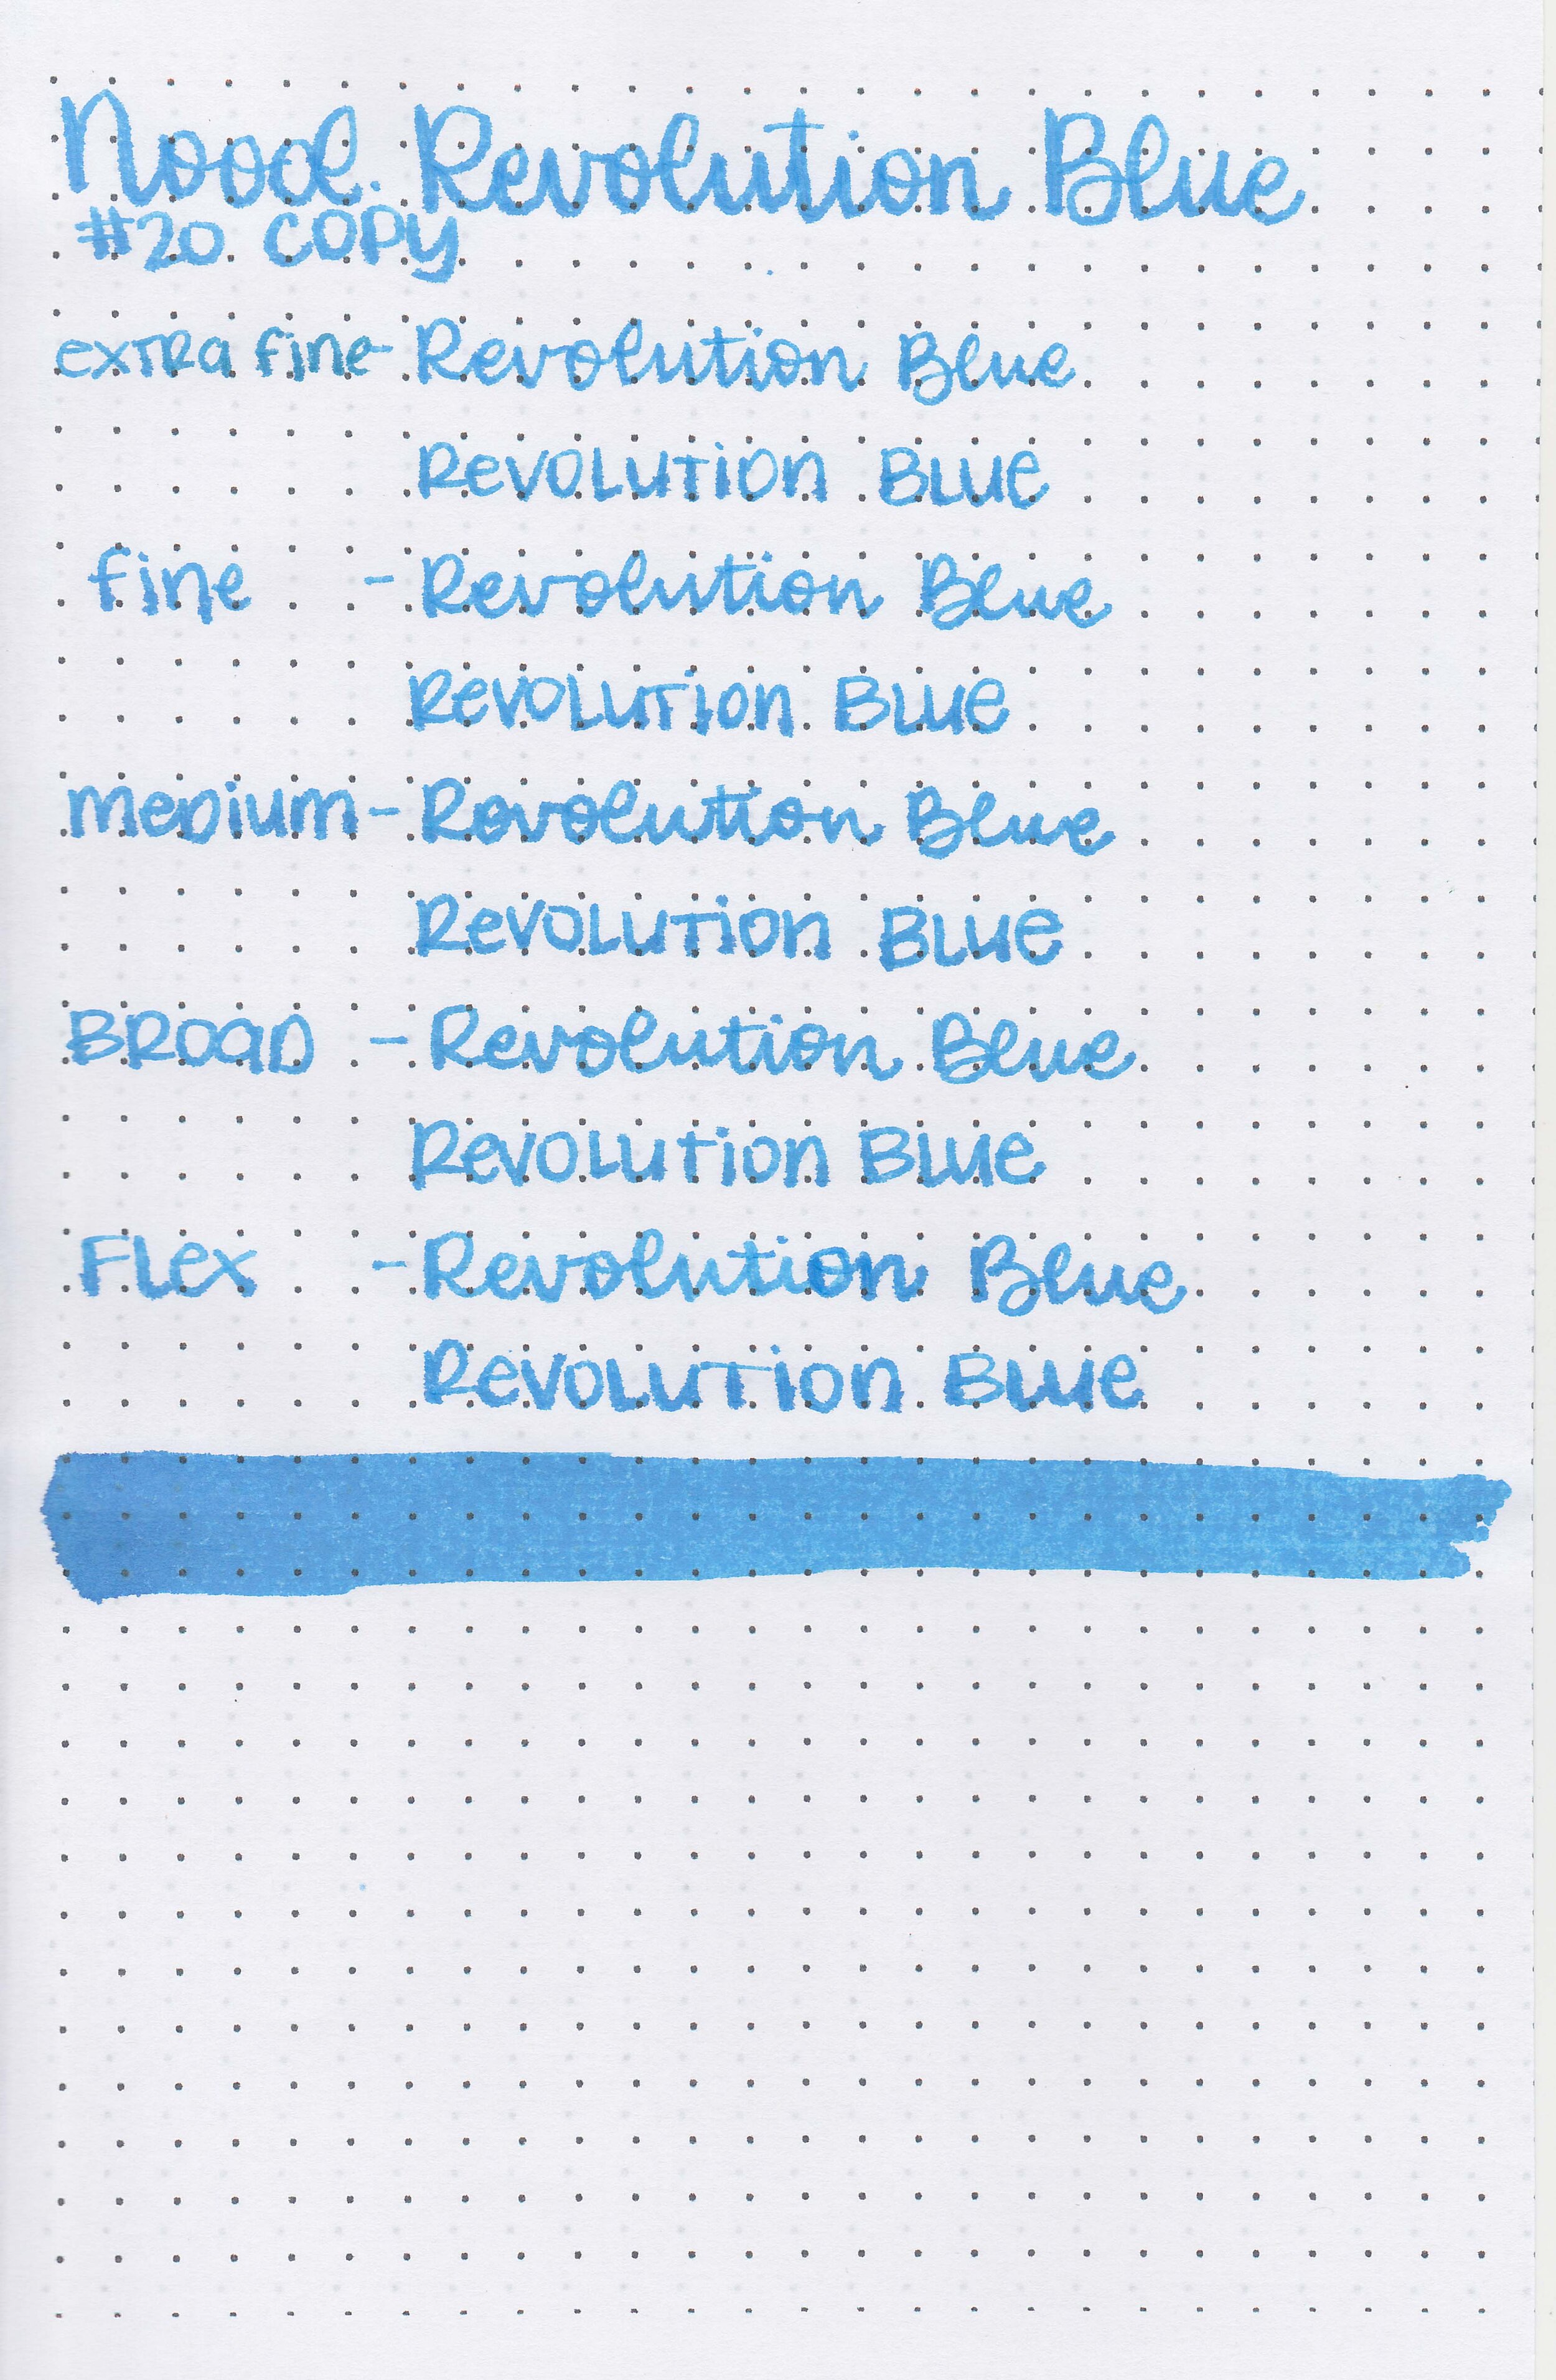 nood-revolution-blue-11.jpg